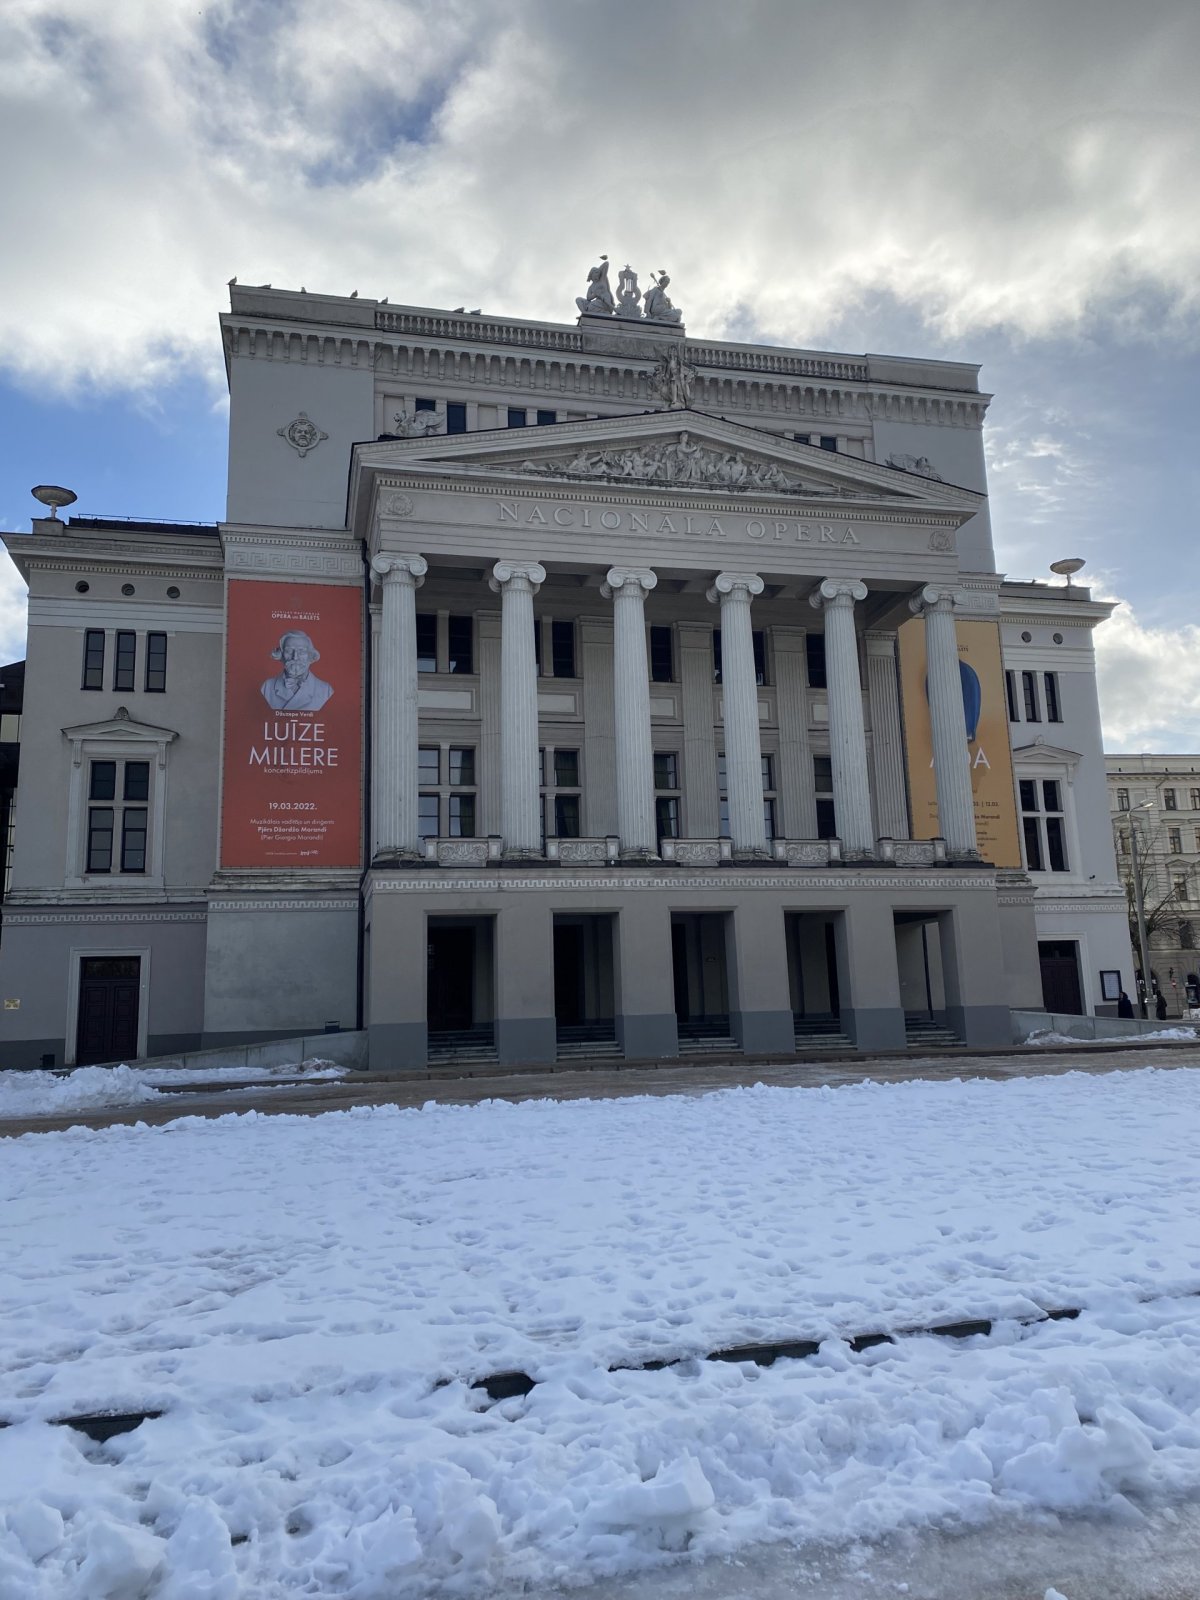 Lotyšská národní opera